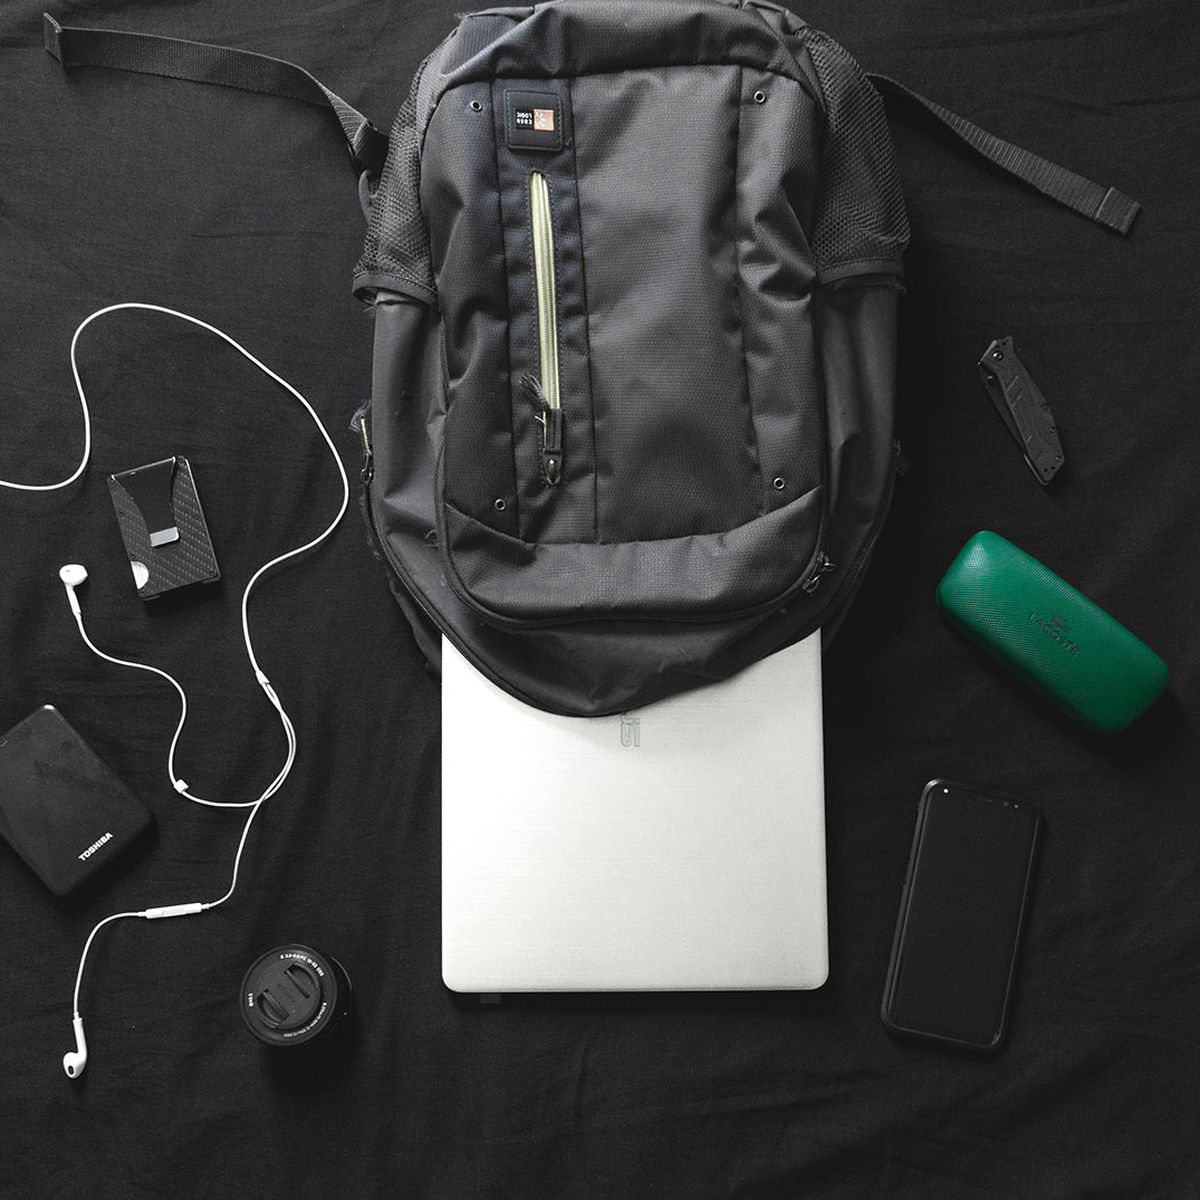 Las mejores mochilas para llevar tu portátil (y media oficina) a cuestas